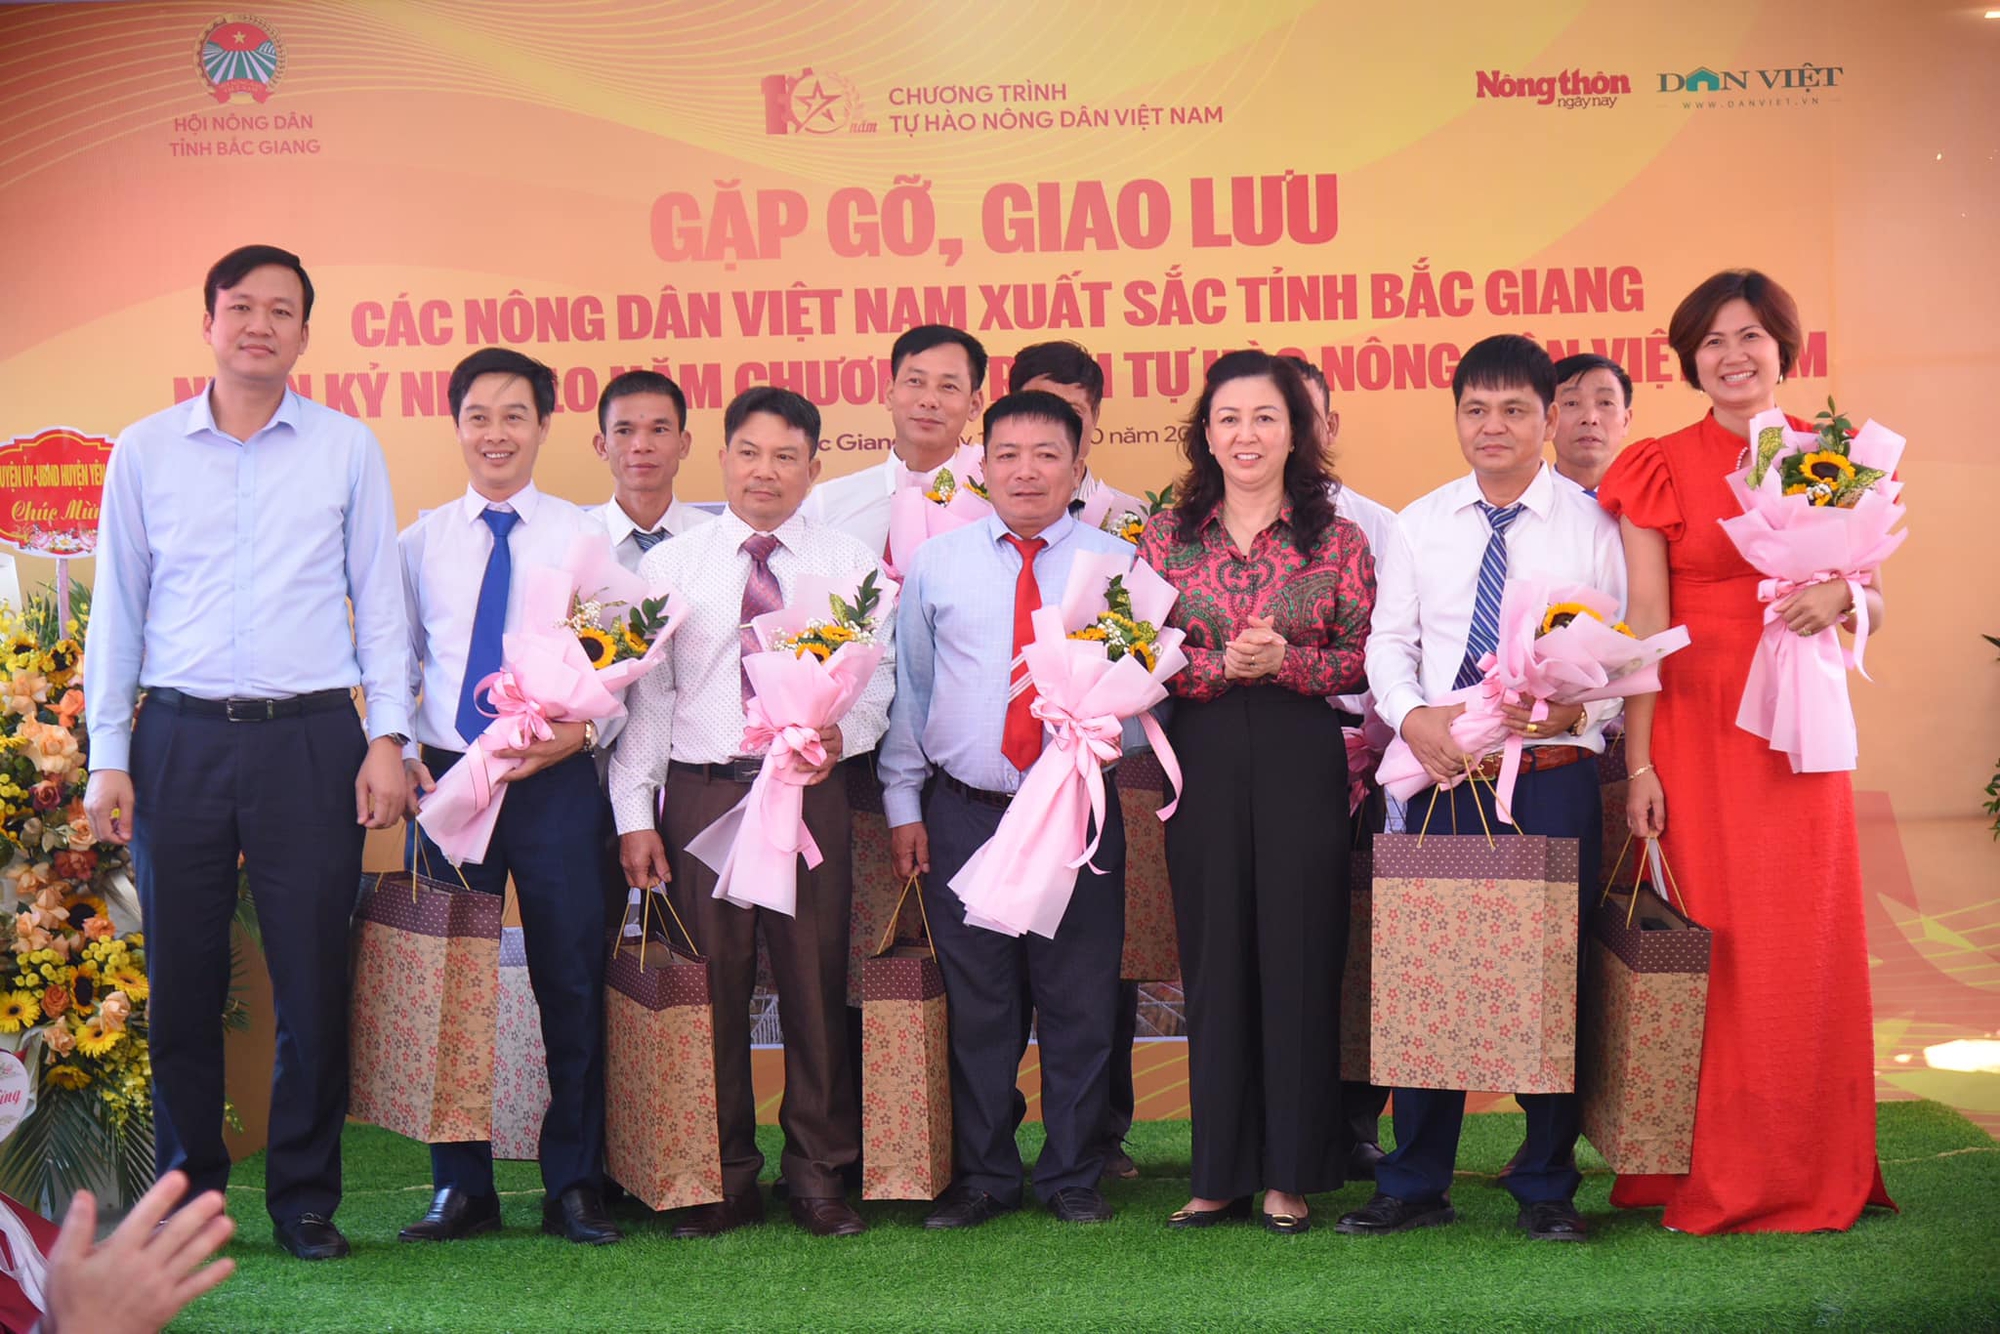 Gặp gỡ, giao lưu với các Nông dân Việt Nam xuất sắc tỉnh Bắc Giang - Ảnh 8.